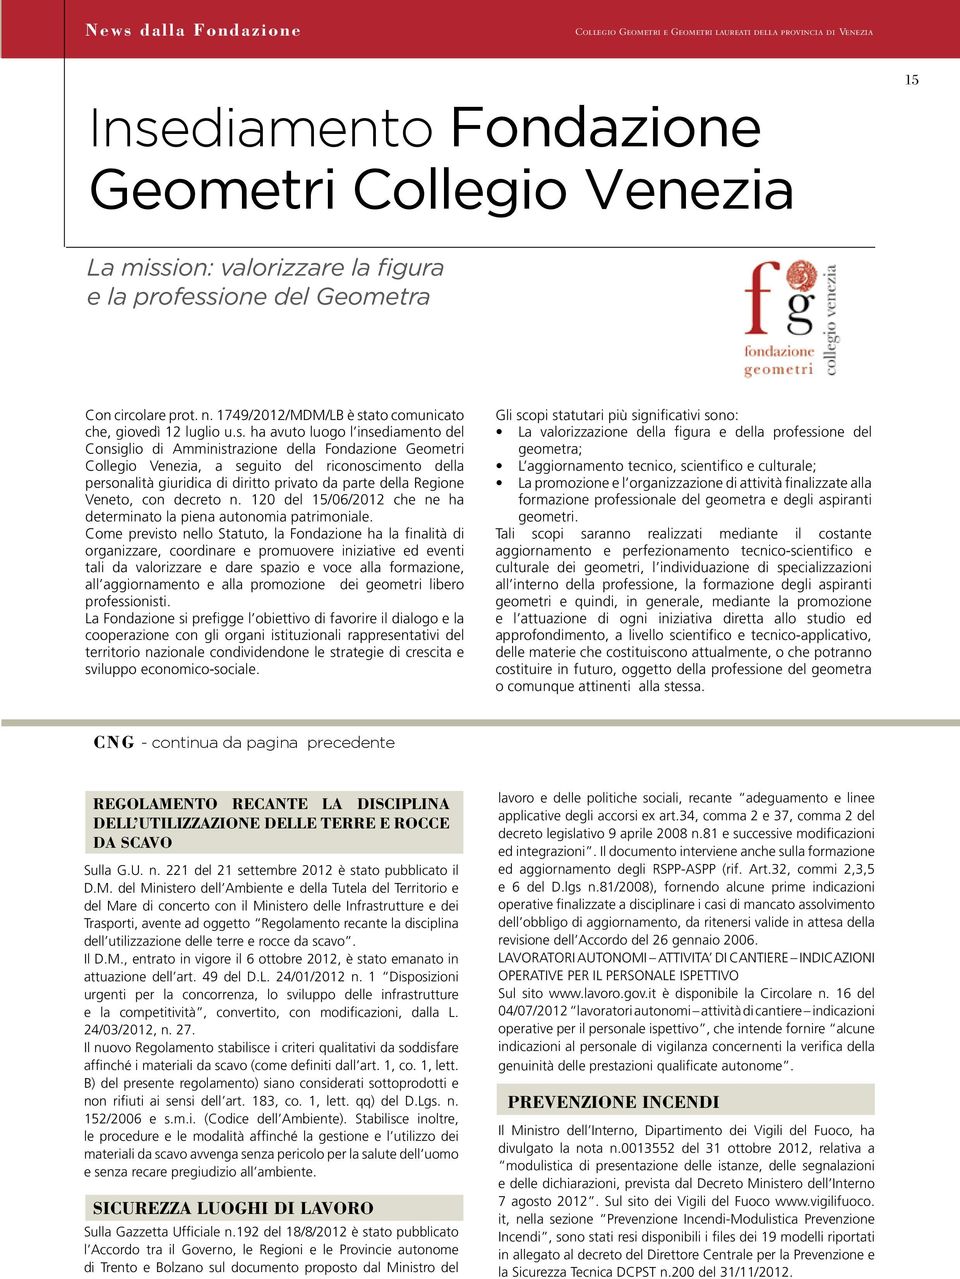 della Regione Veneto, con decreto n. 120 del 15/06/2012 che ne ha determinato la piena autonomia patrimoniale.